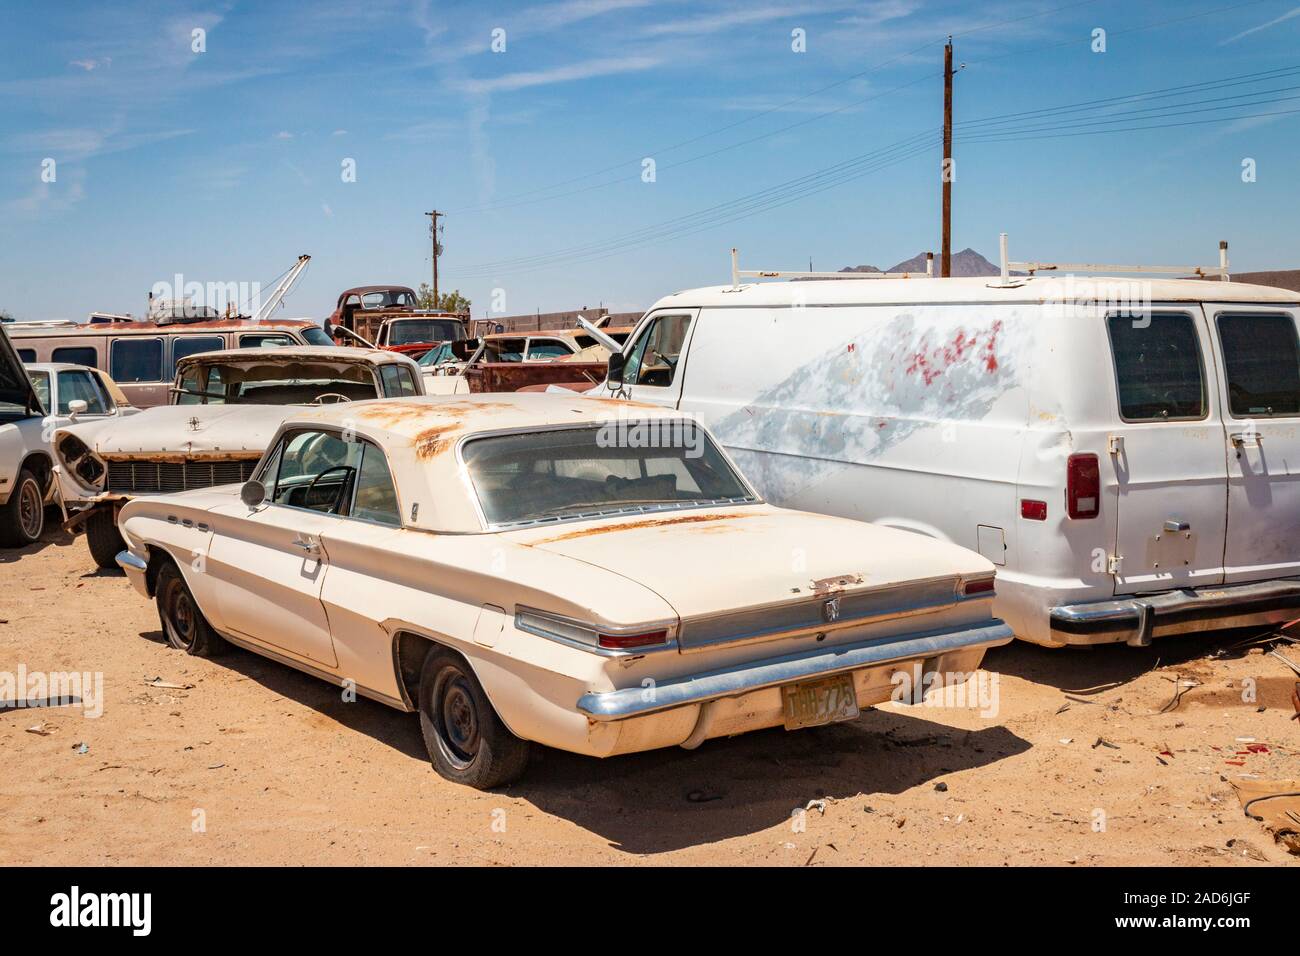 1961 Buick Skylark rostige alte Autos und Lastwagen auf einem Schrottplatz in der Wüste in Phoenix, Arizona, USA Stockfoto